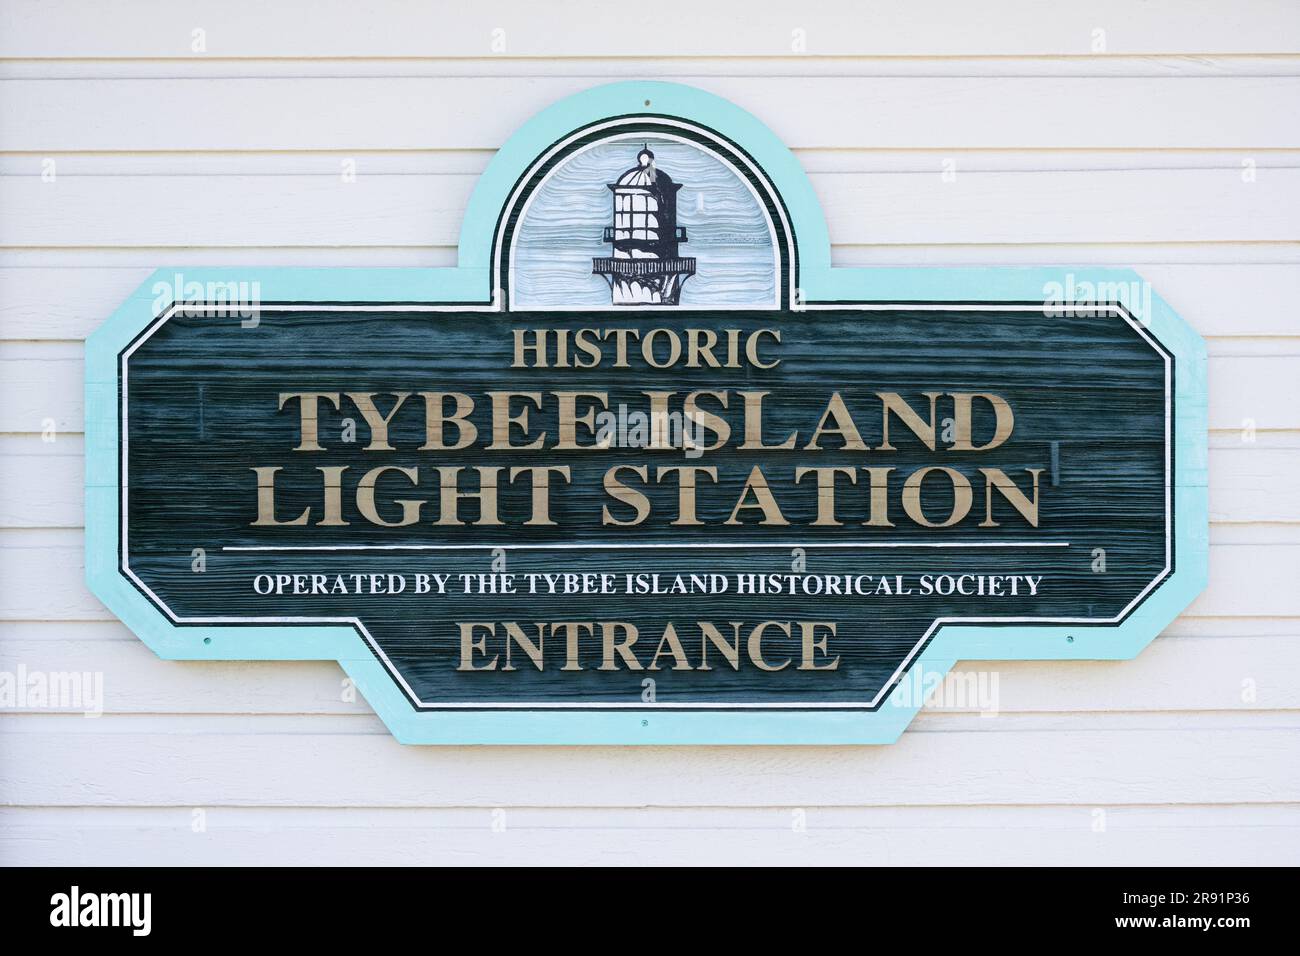 Panneau d'entrée à la station de lumière historique de Tybee Island, sur Tybee Island, le long de la côte atlantique, juste à l'est de Savannah, Géorgie. (ÉTATS-UNIS) Banque D'Images